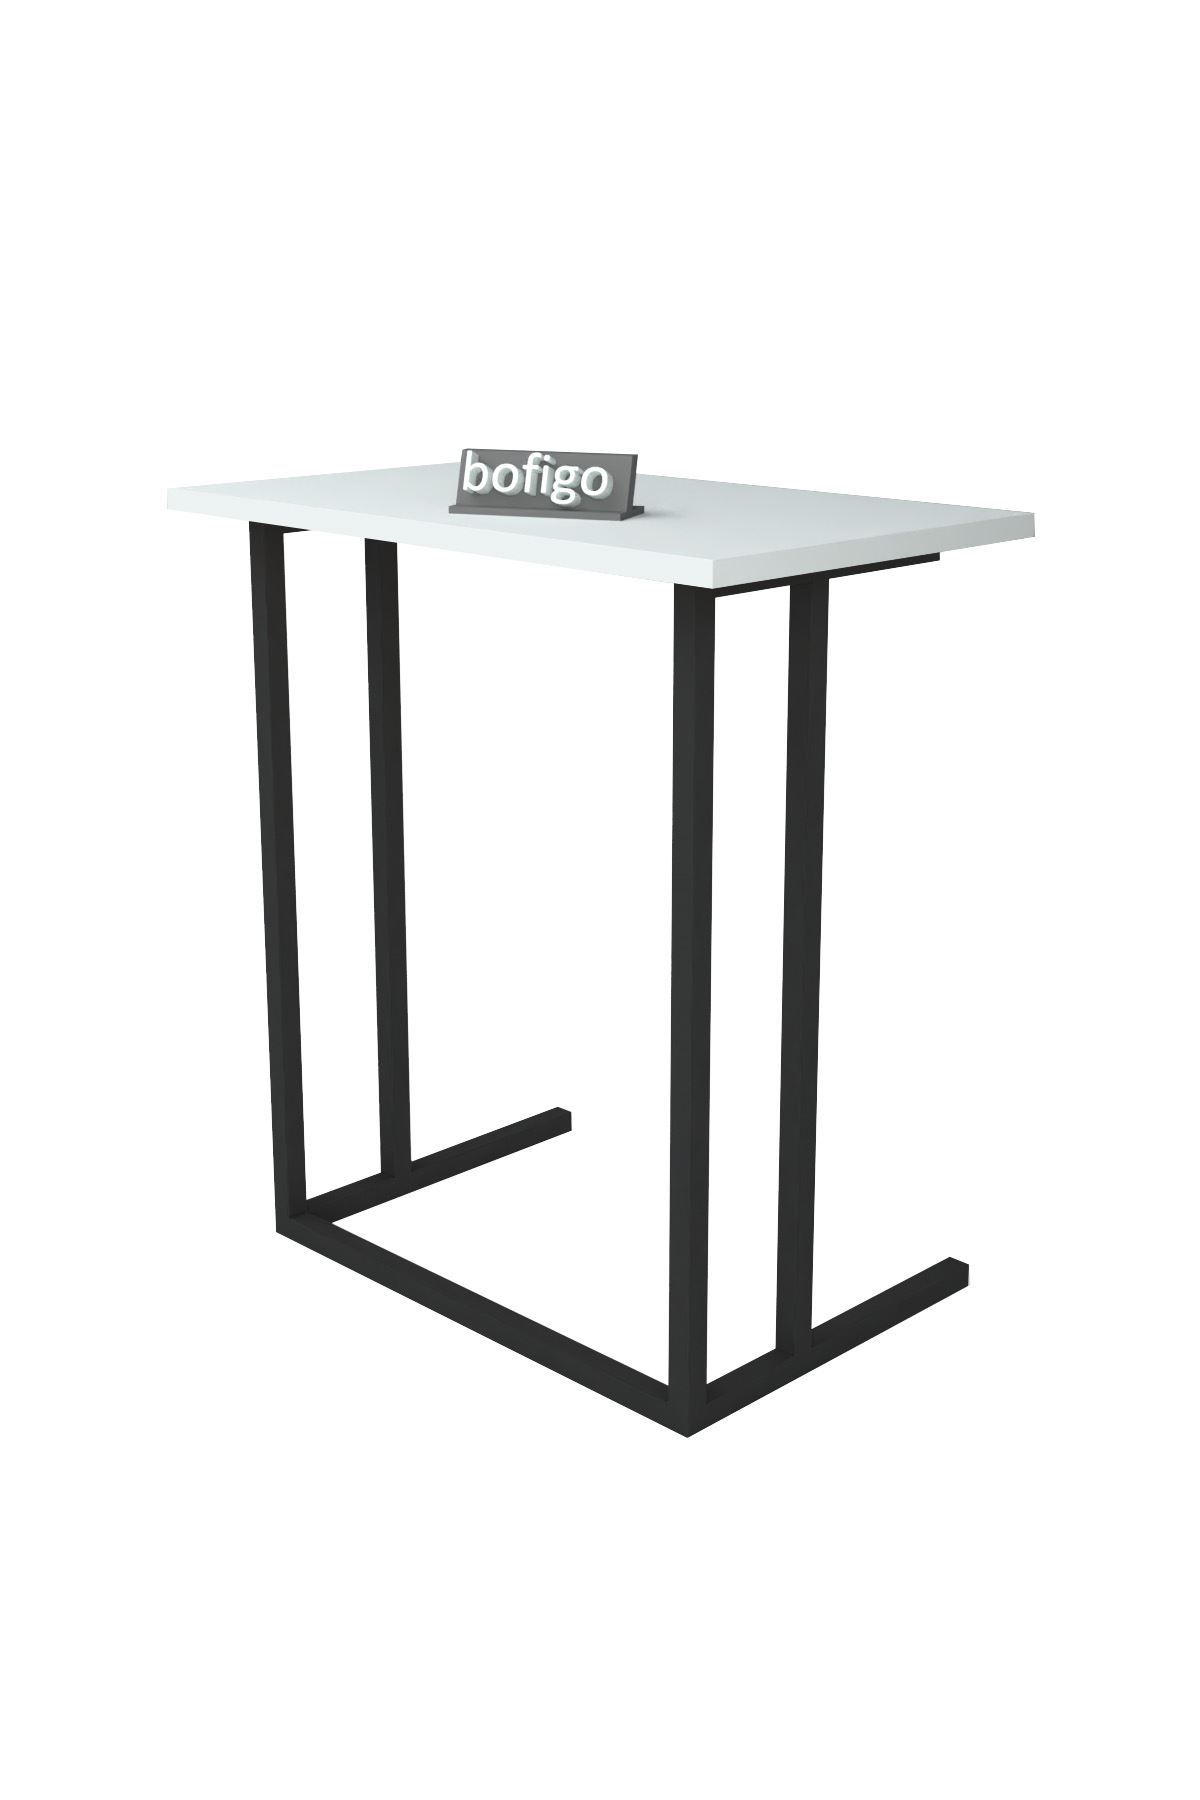 Bofigo Metal Leg Laptop Table Breakfast Table Work Table White